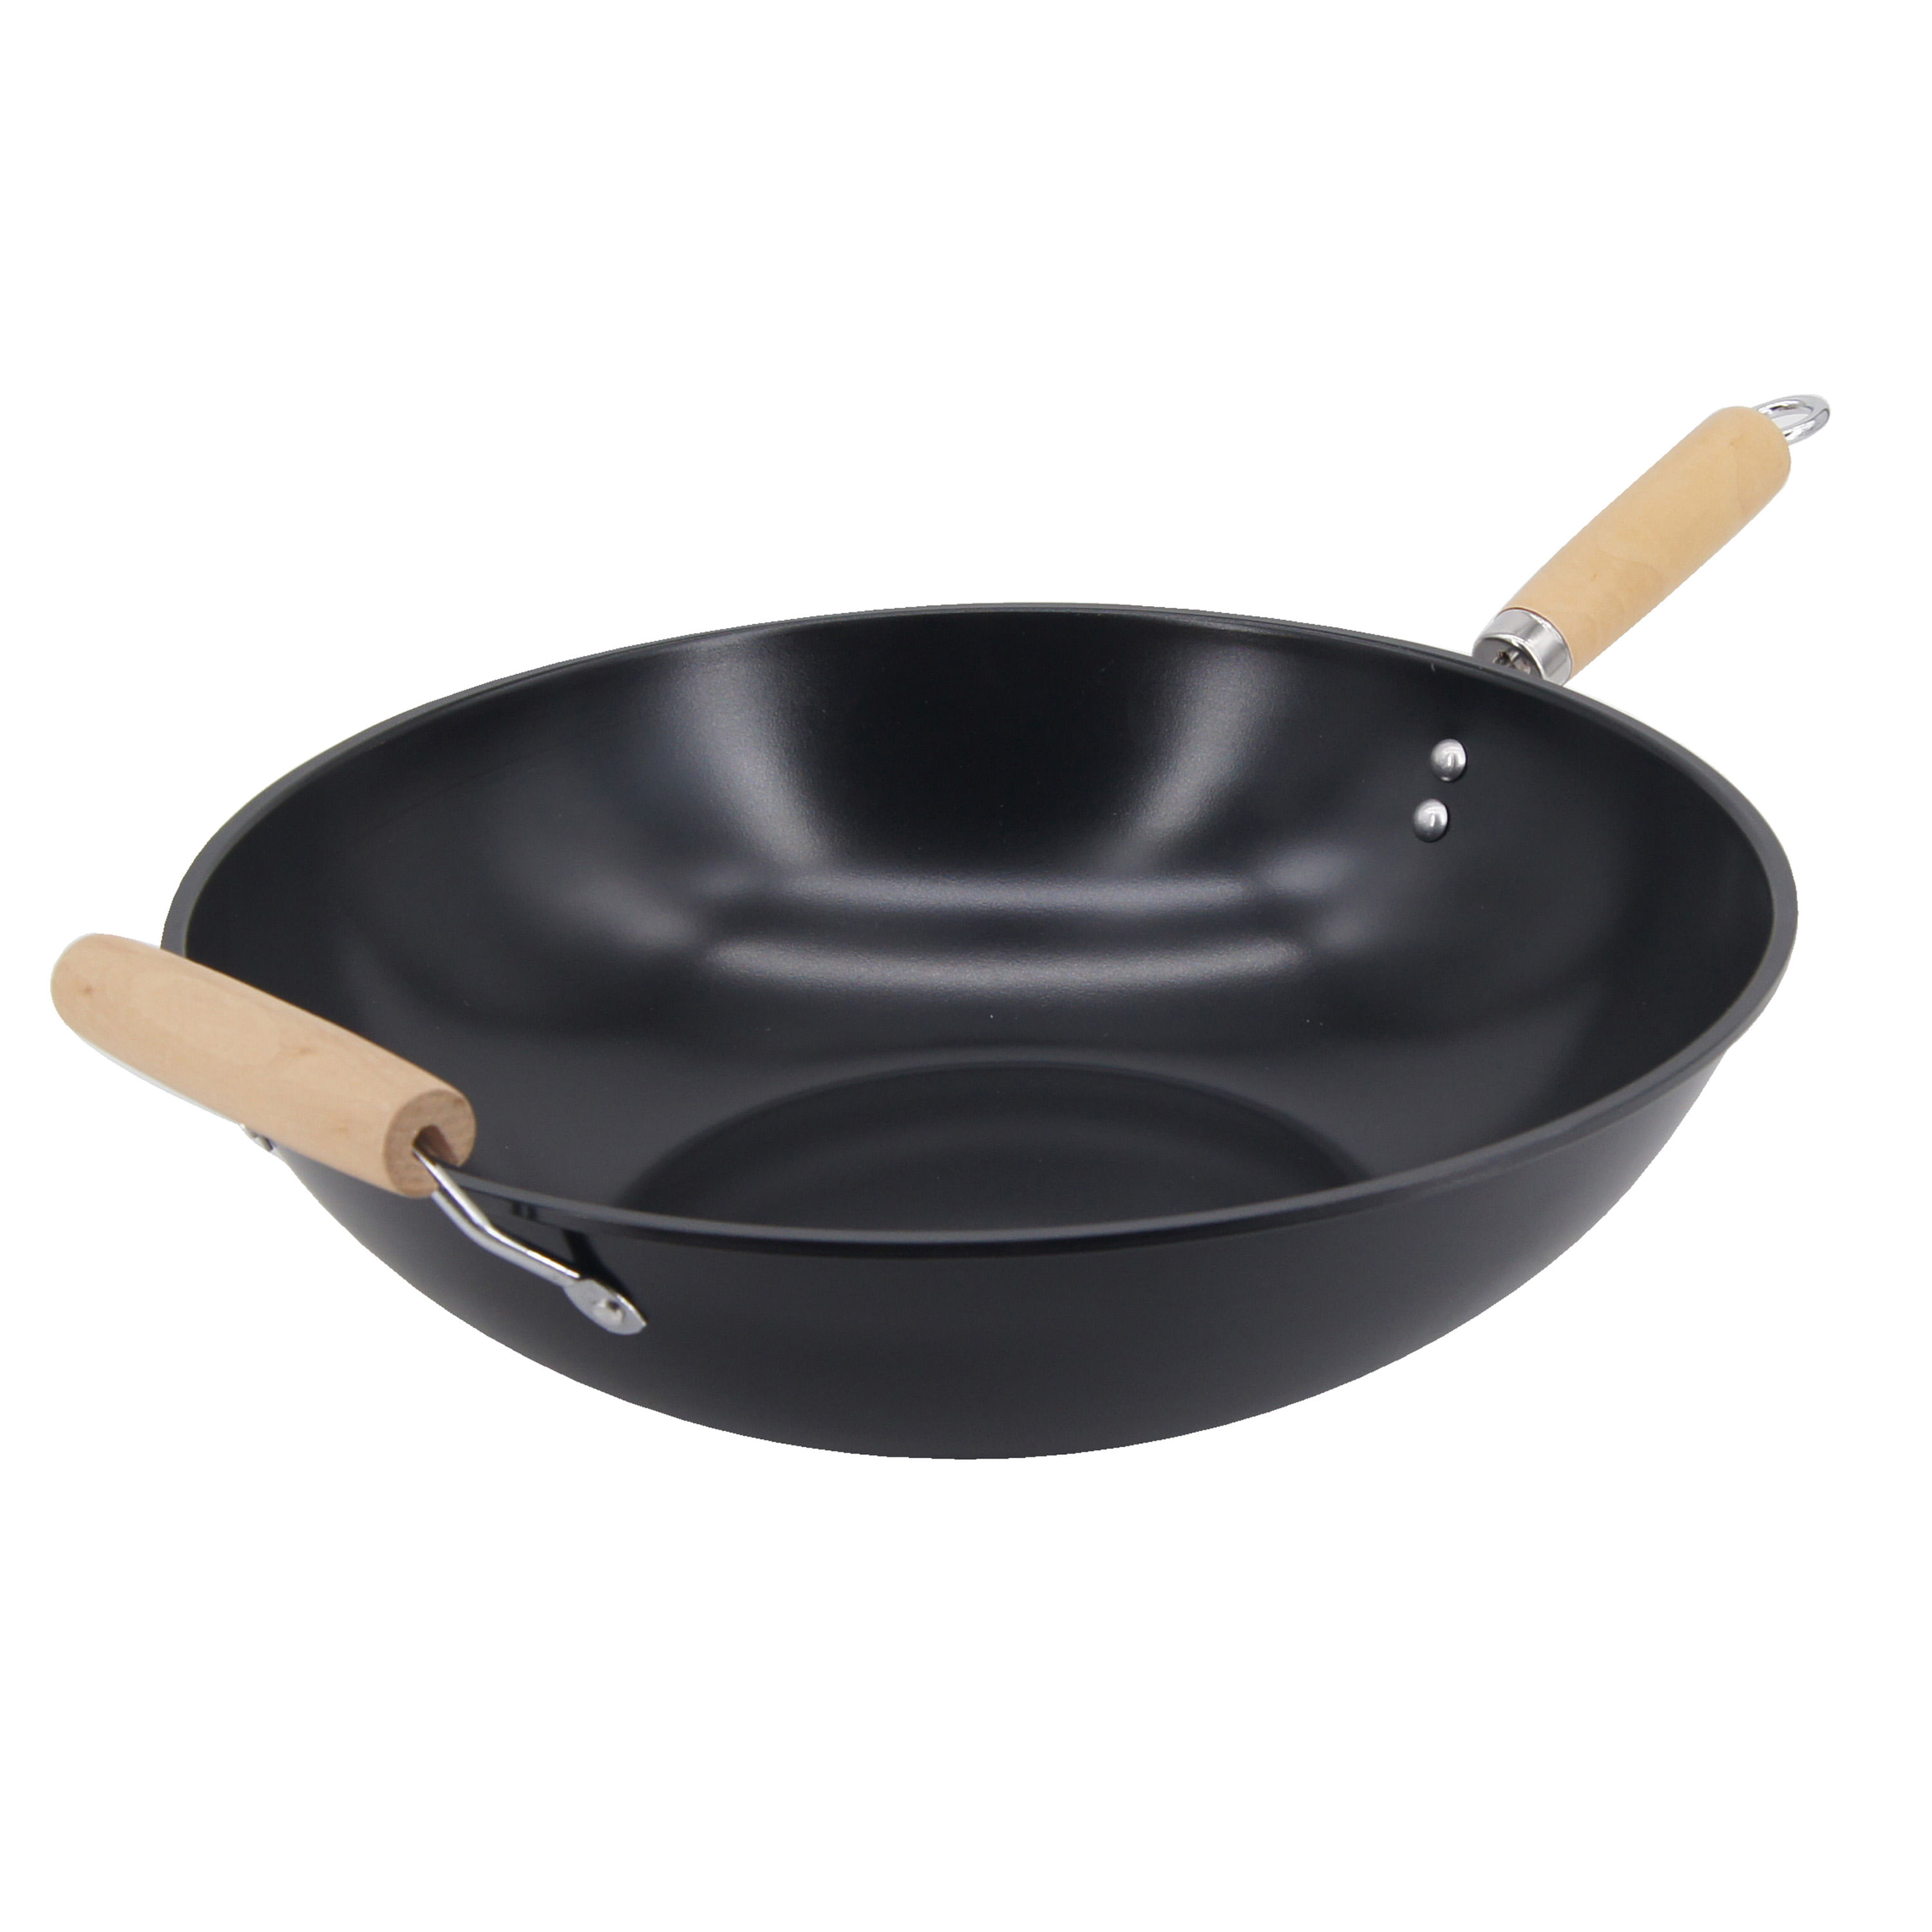  Wok de acero al carbono – Sartén wok de 12.9 pulgadas